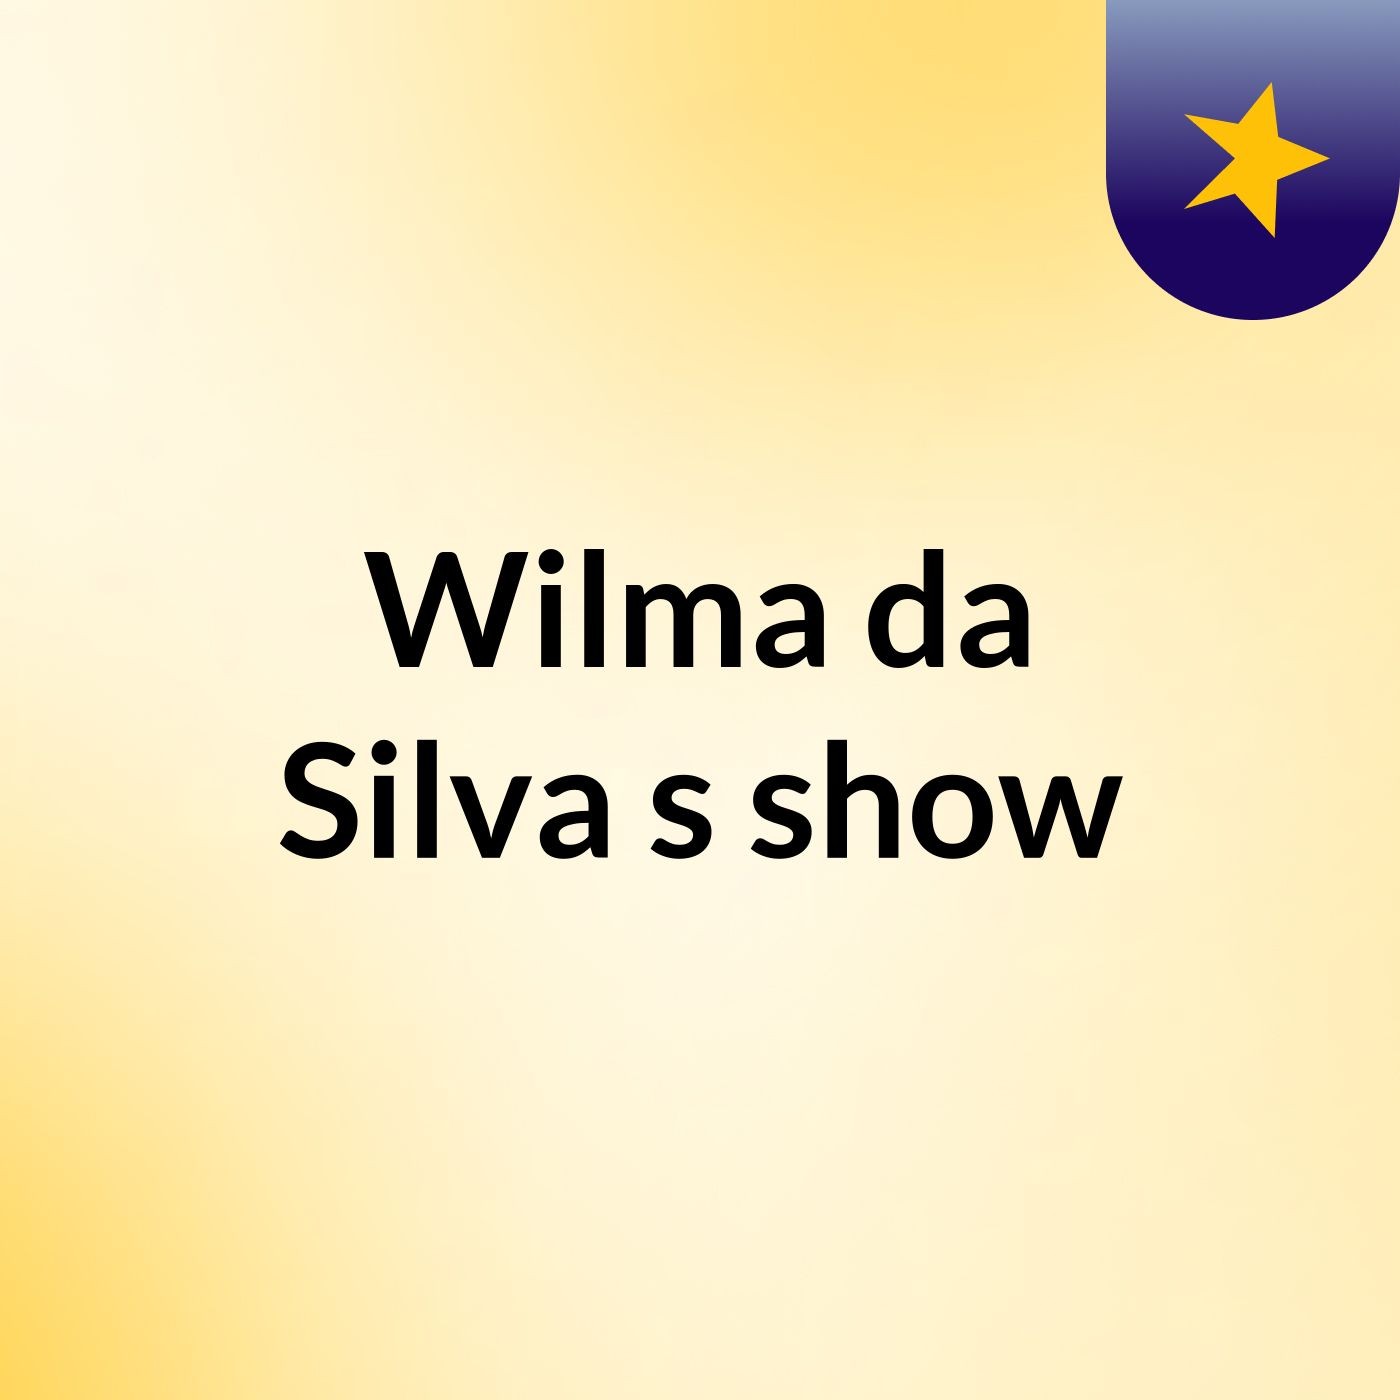 Wilma da Silva's show